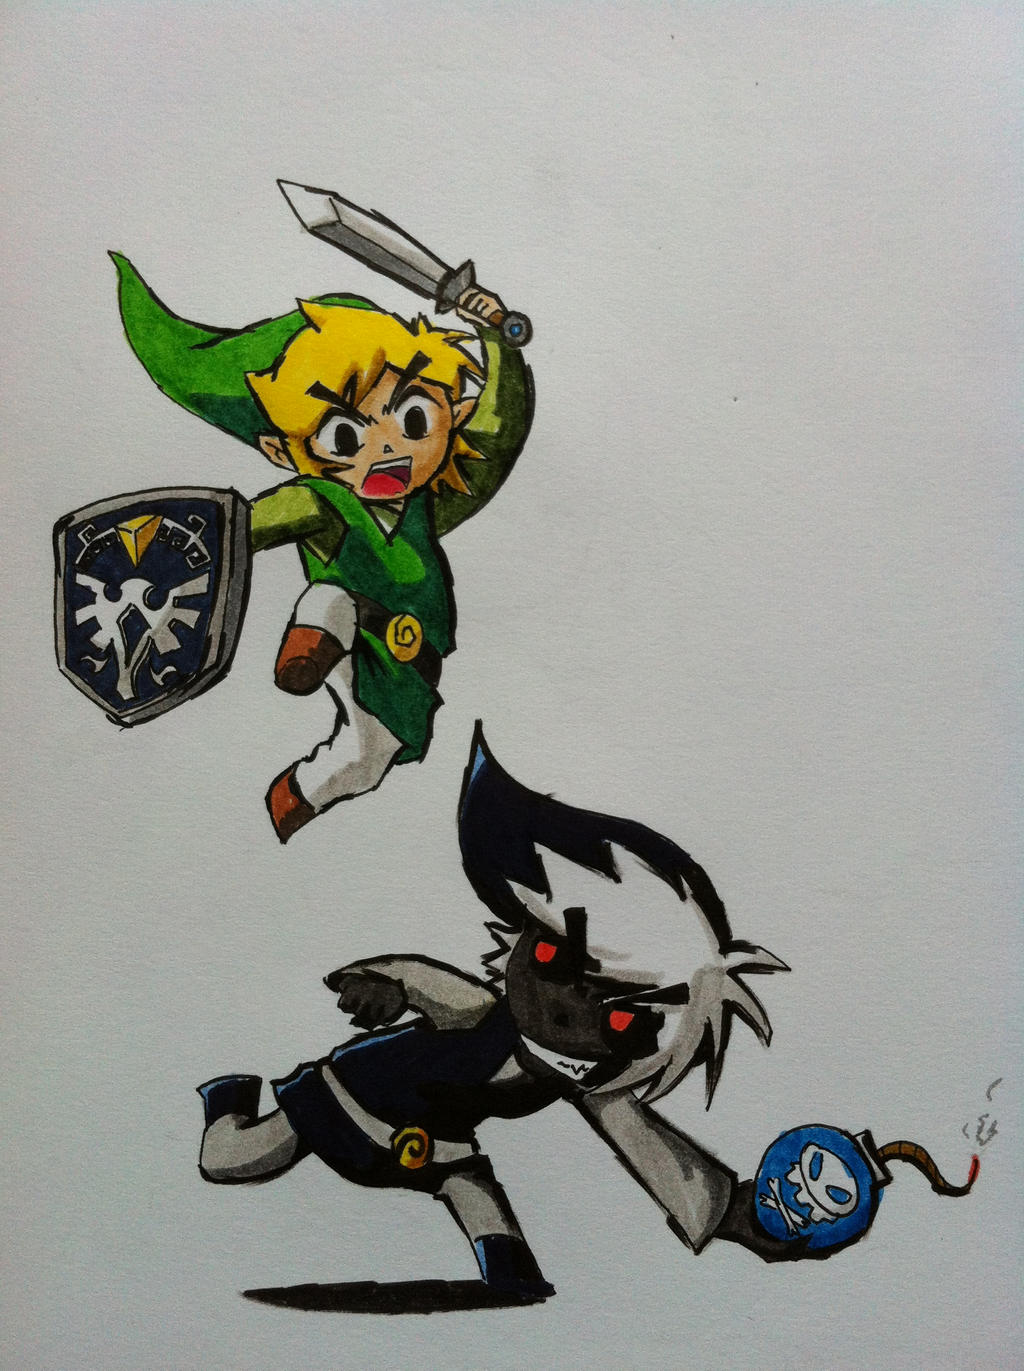 Toon Link vs Dark Toon Link